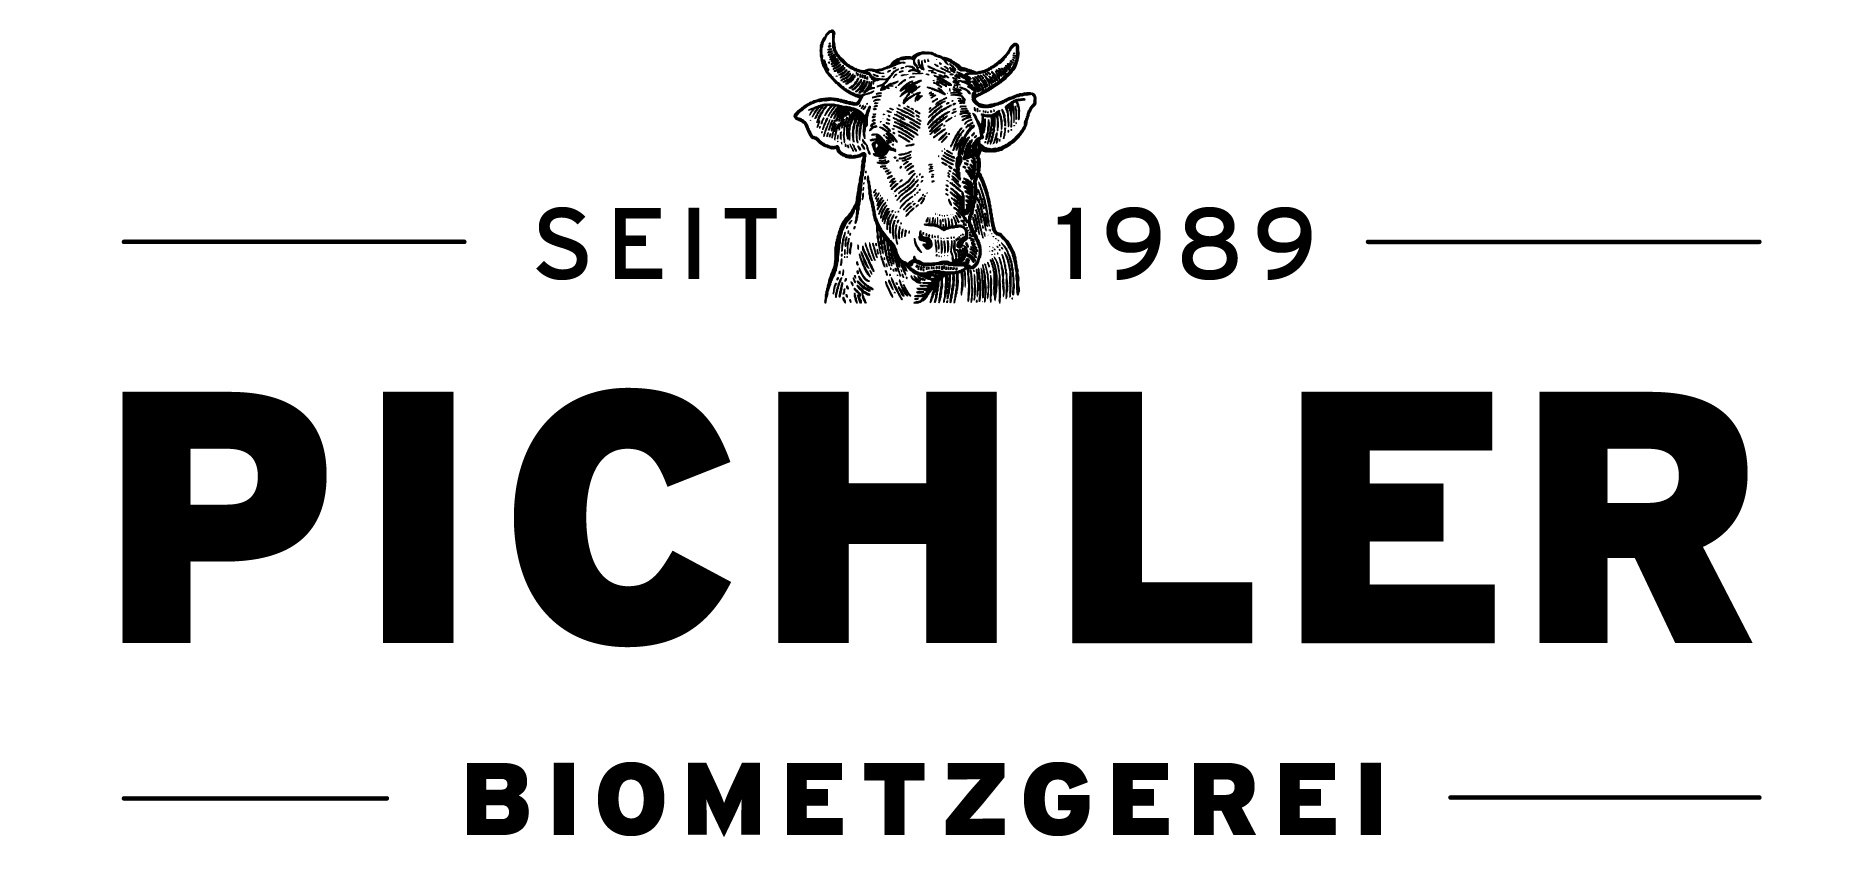 Pichler Biofleisch-Vertriebs GmbH & Co. KG